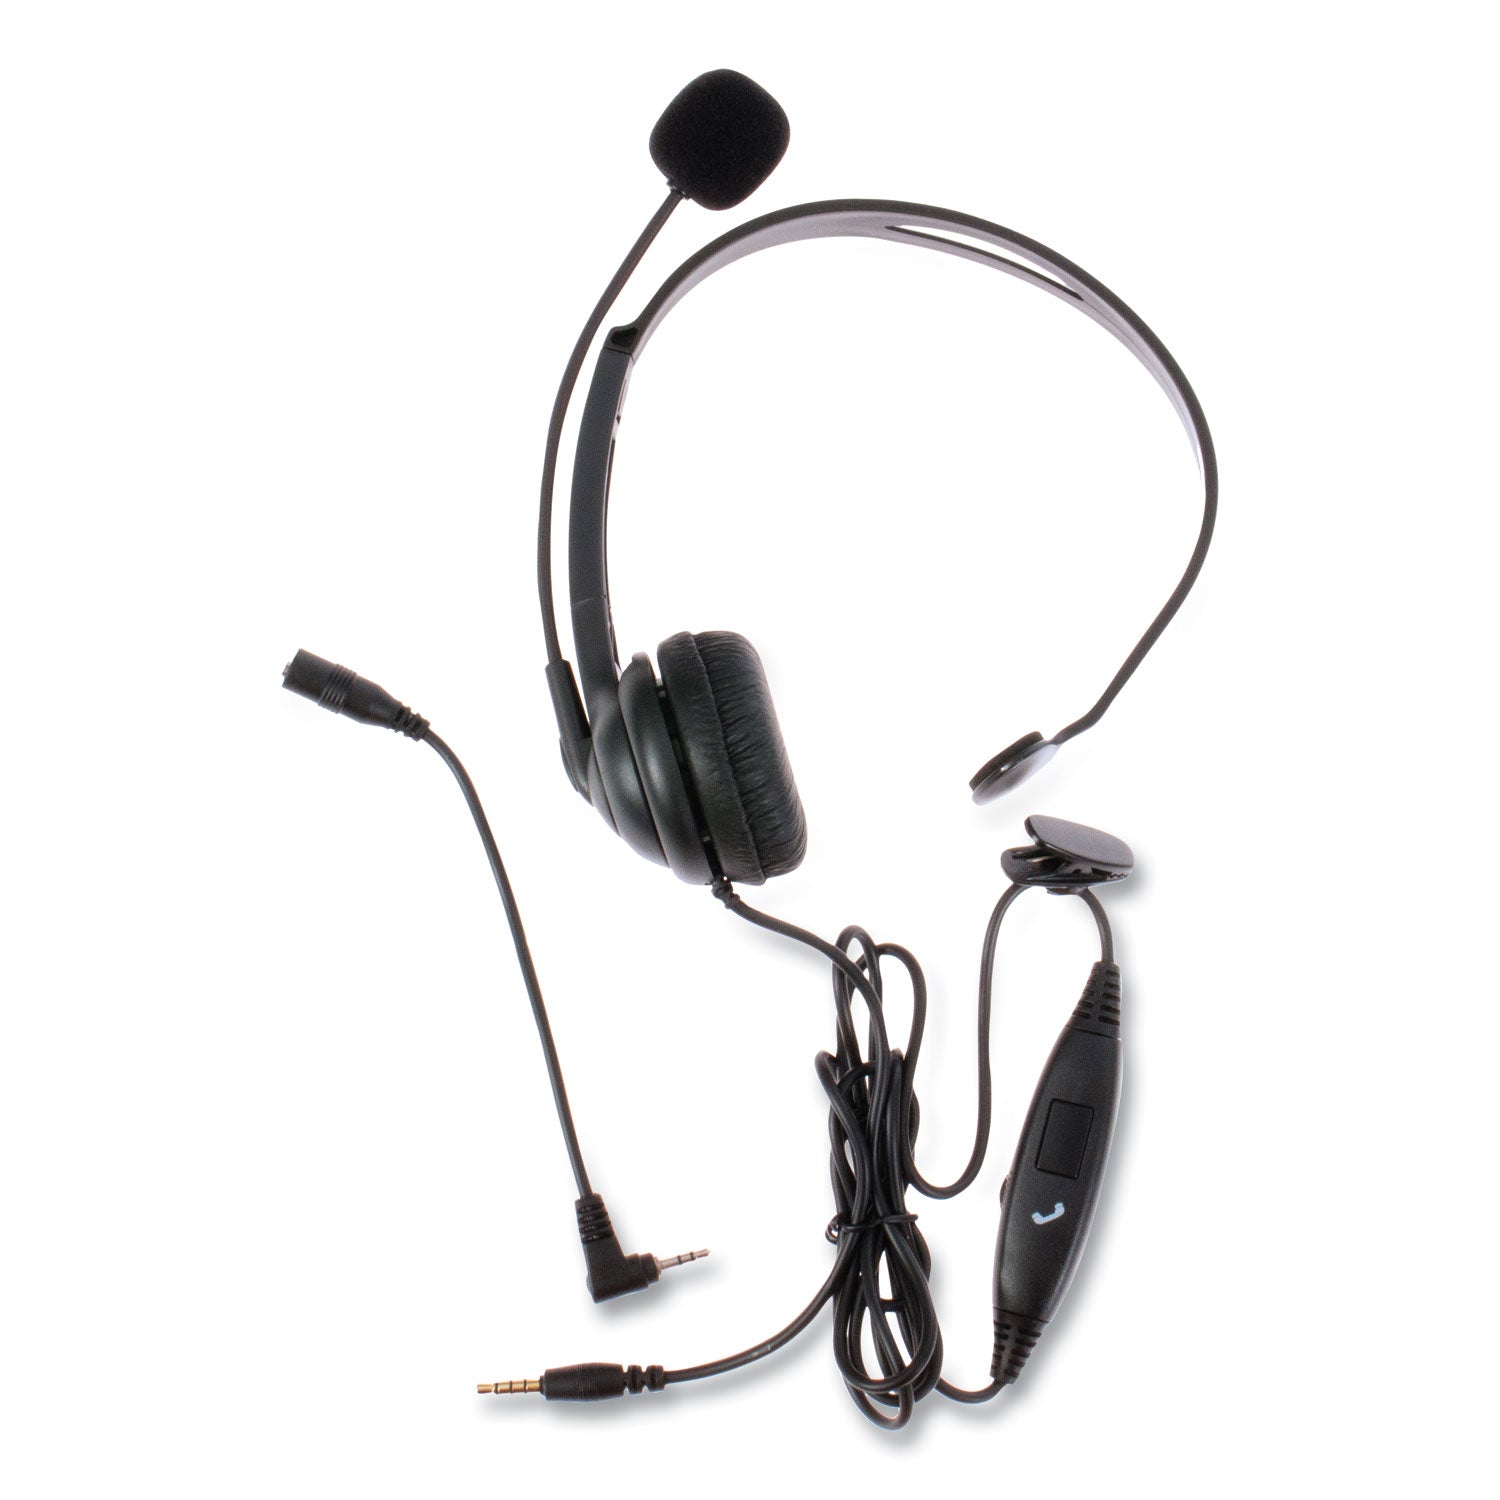 zum-zum350m-monaural-over-the-head-headset-black_sptzum350m - 1